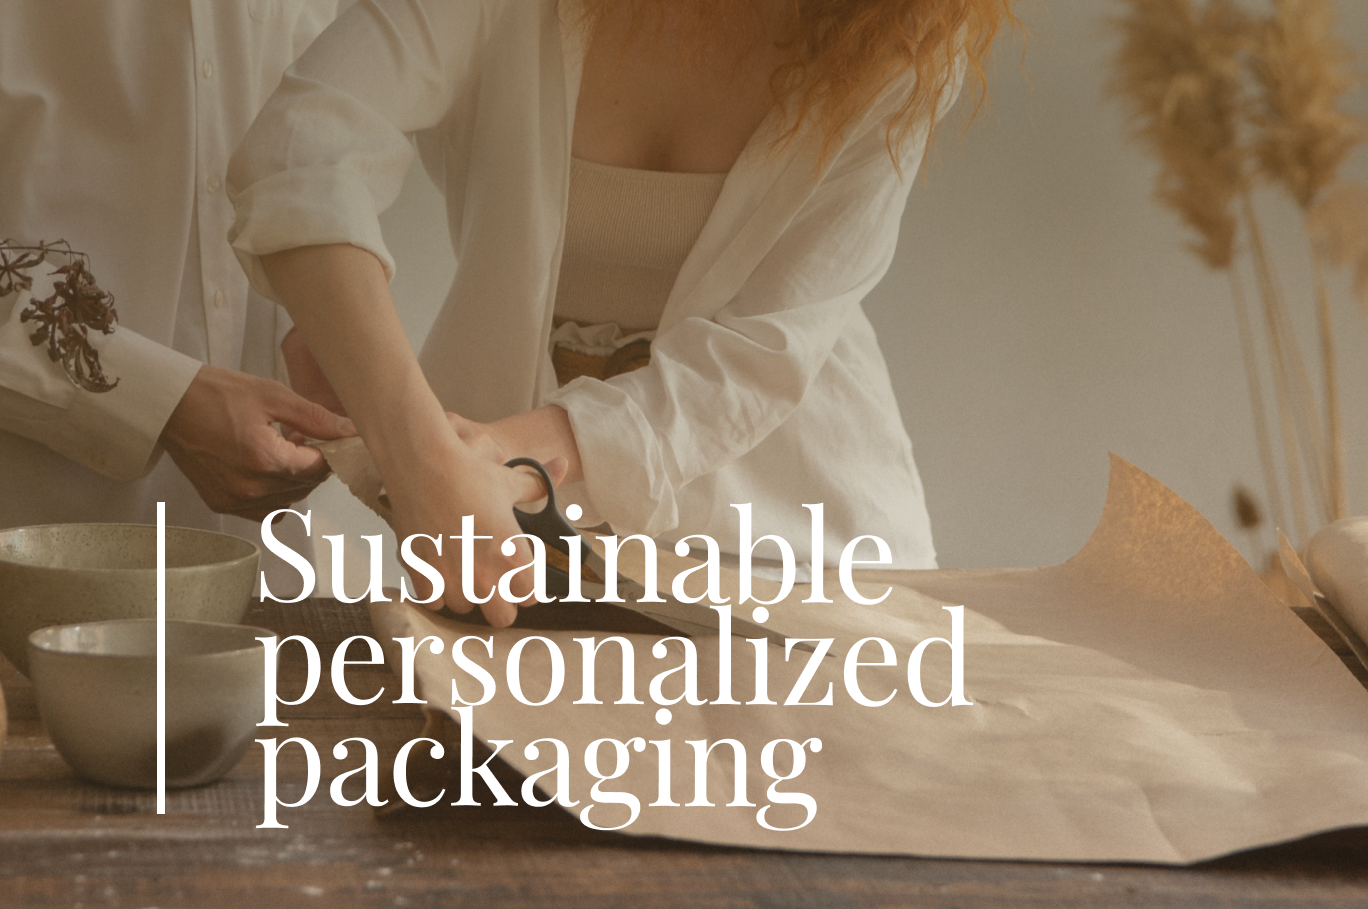 Bolsas personalizadas y packaging sostenible